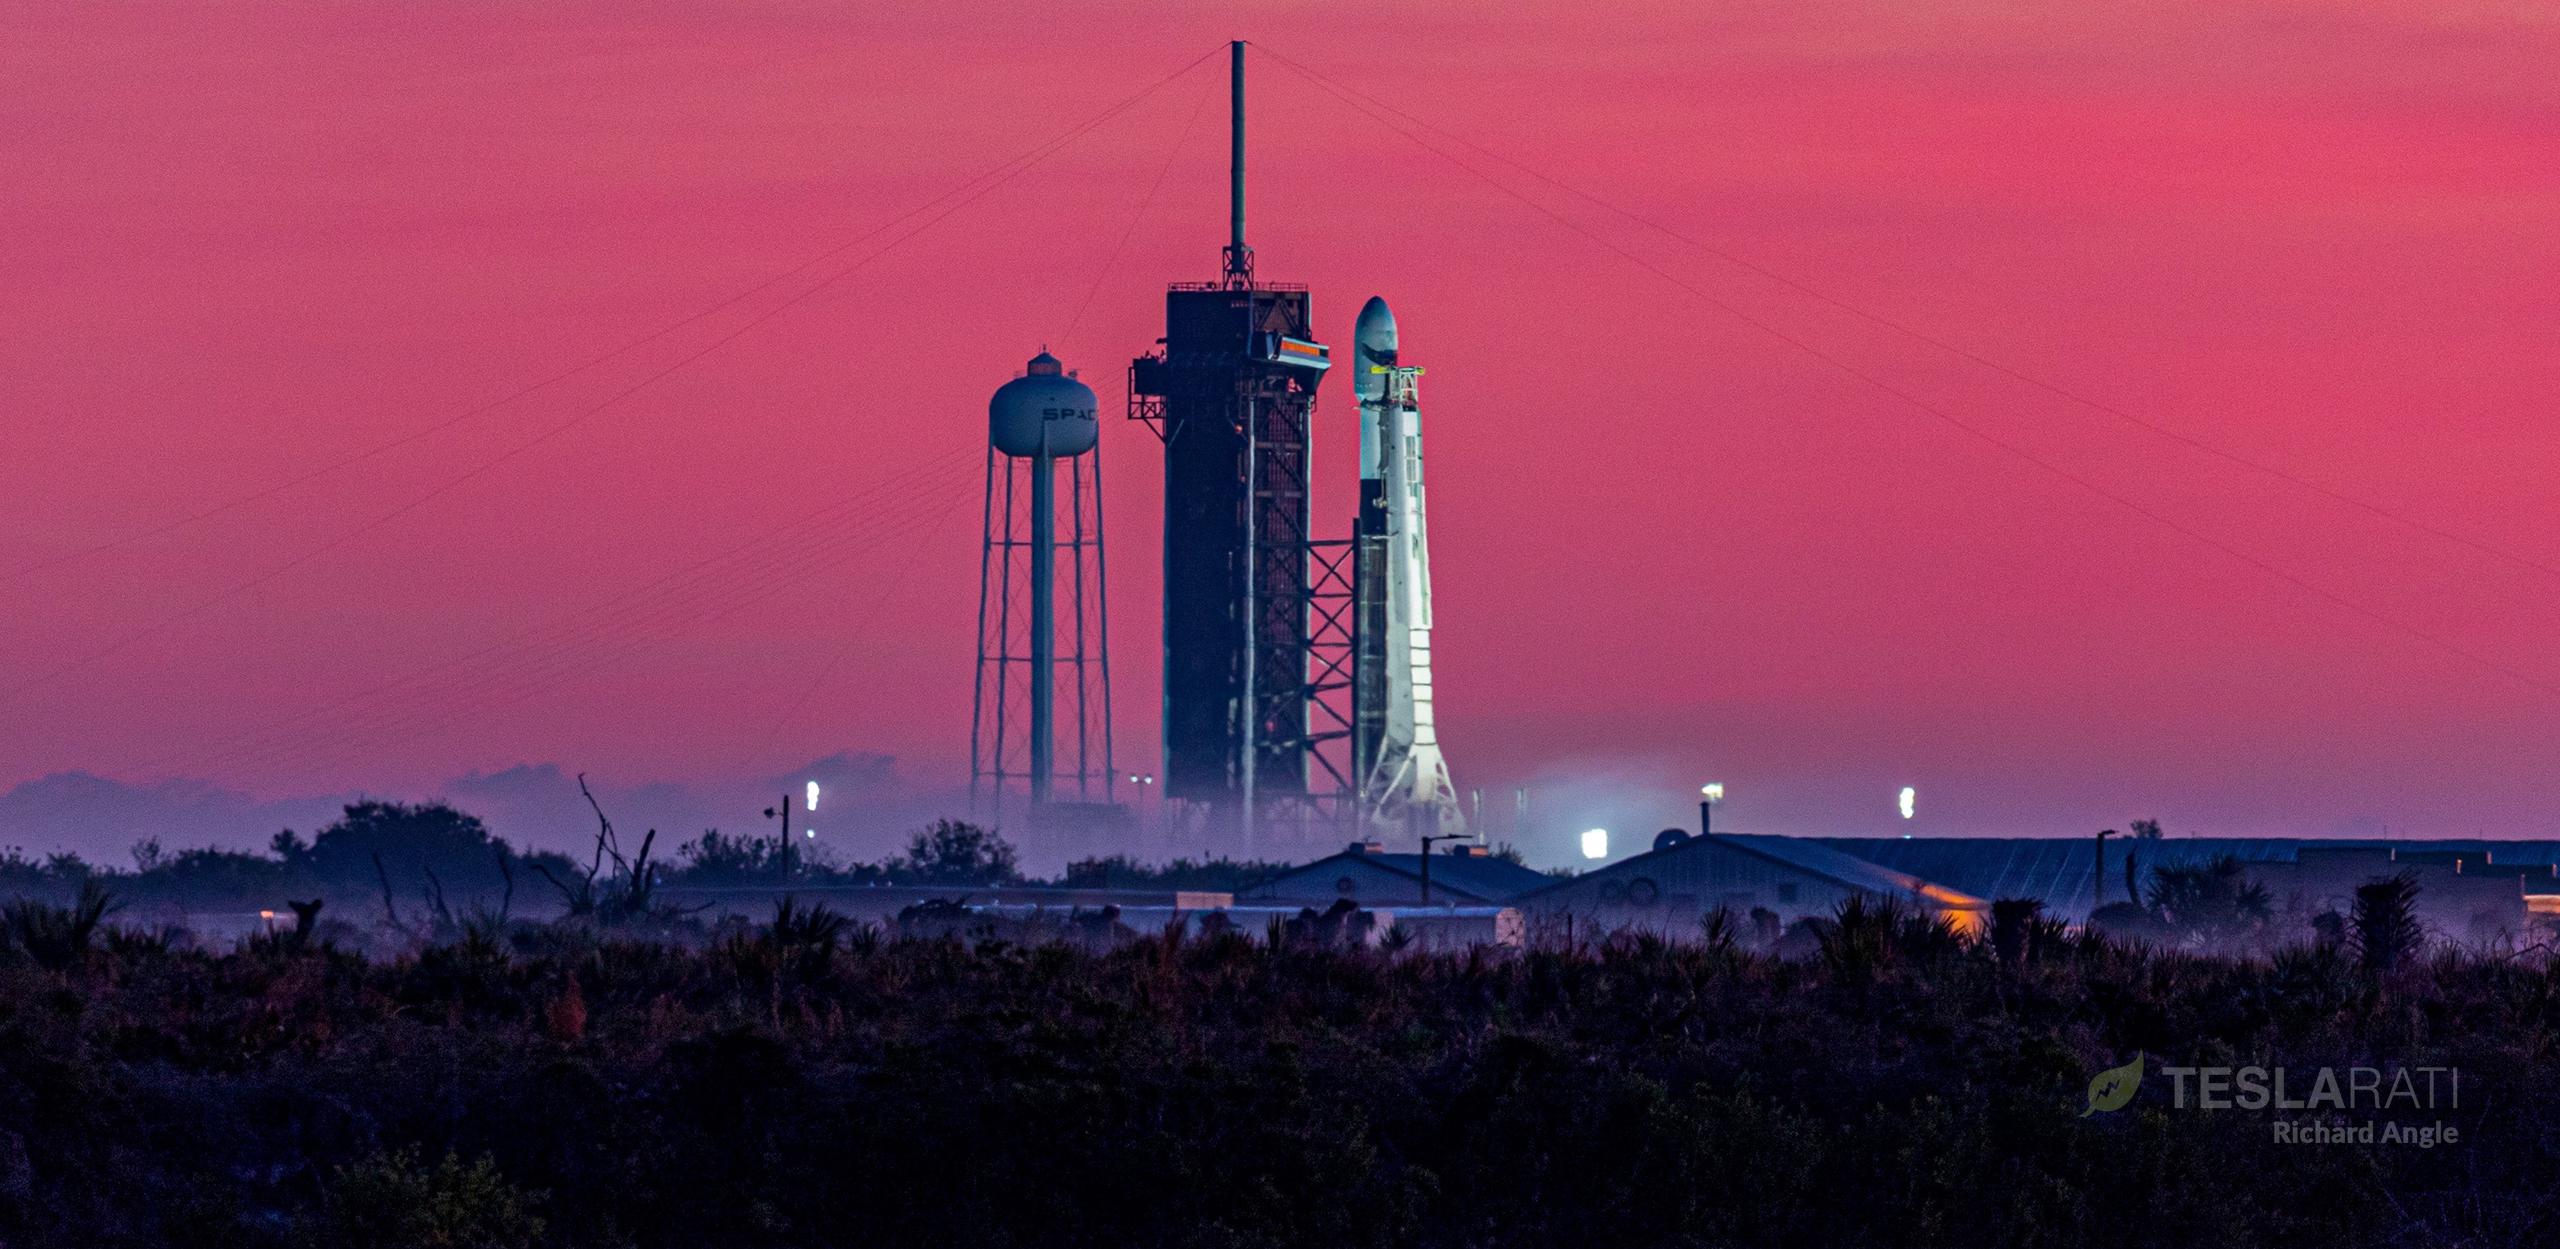 Starlink-16 Falcon 9 B1051 39A 012021 (Richard Angle) sunrise 1 crop 2 (c)